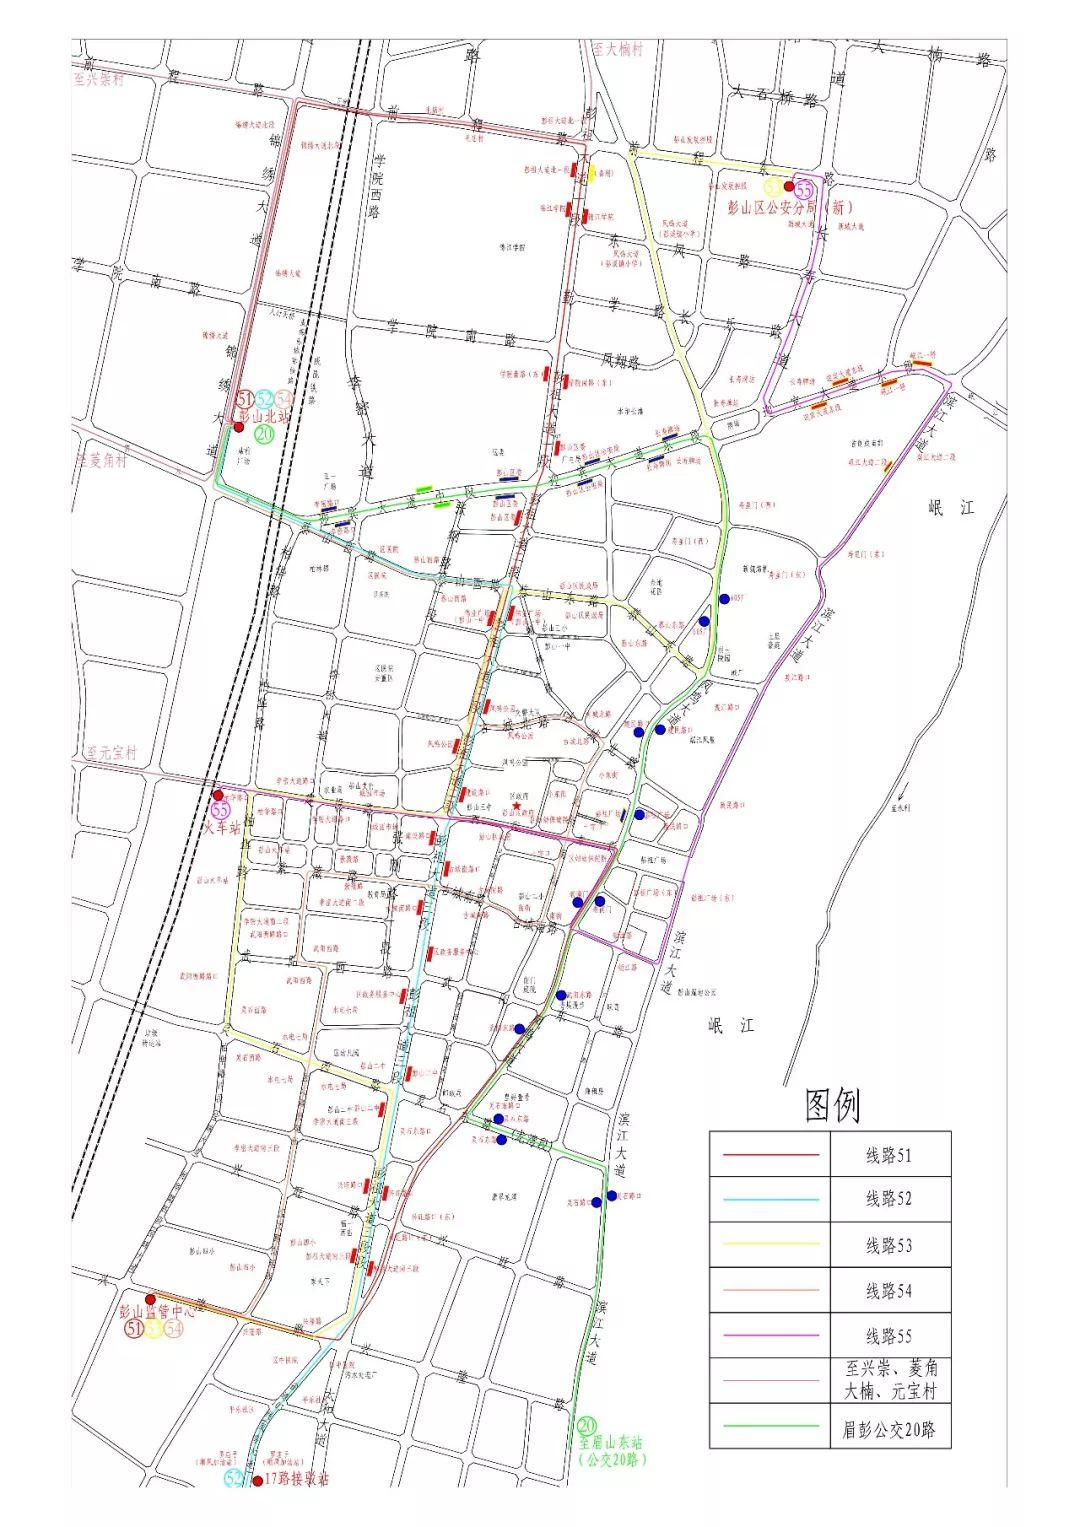 1 规划线路: 新规划公交线路9条:城市公交线路5条,社区公交线路4条.